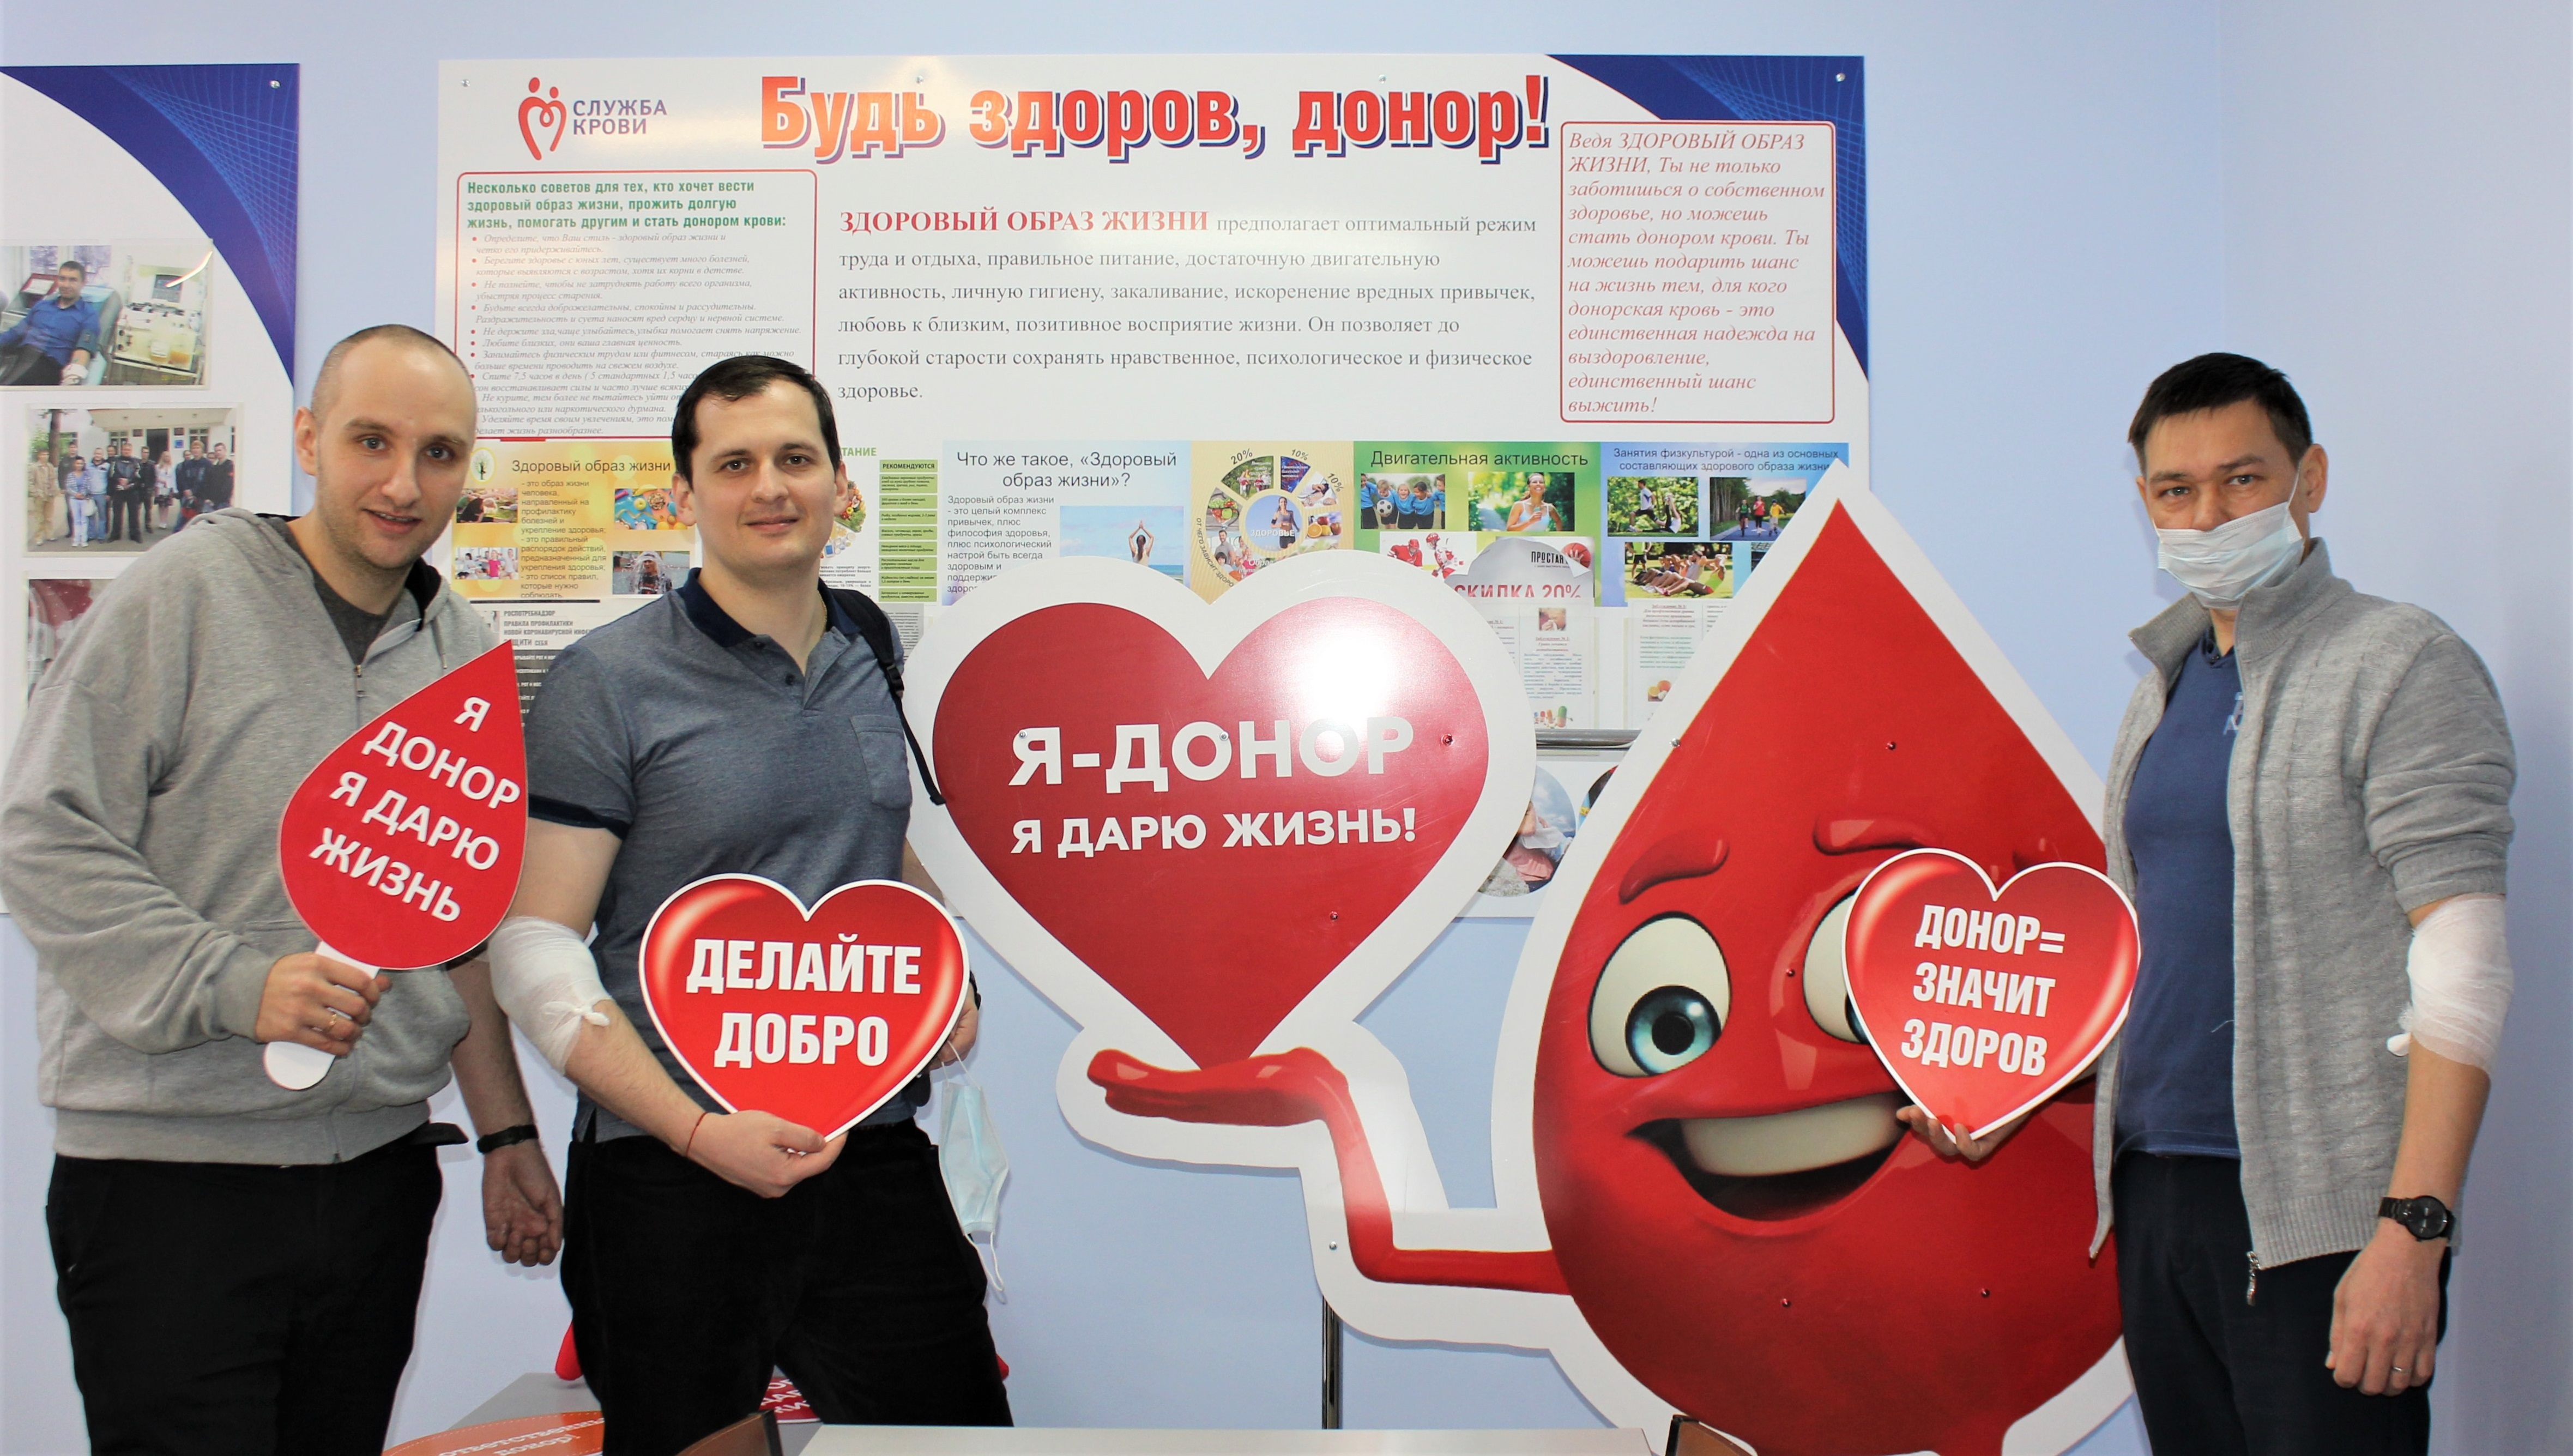 40 энергетиков Марий Эл стали донорами крови